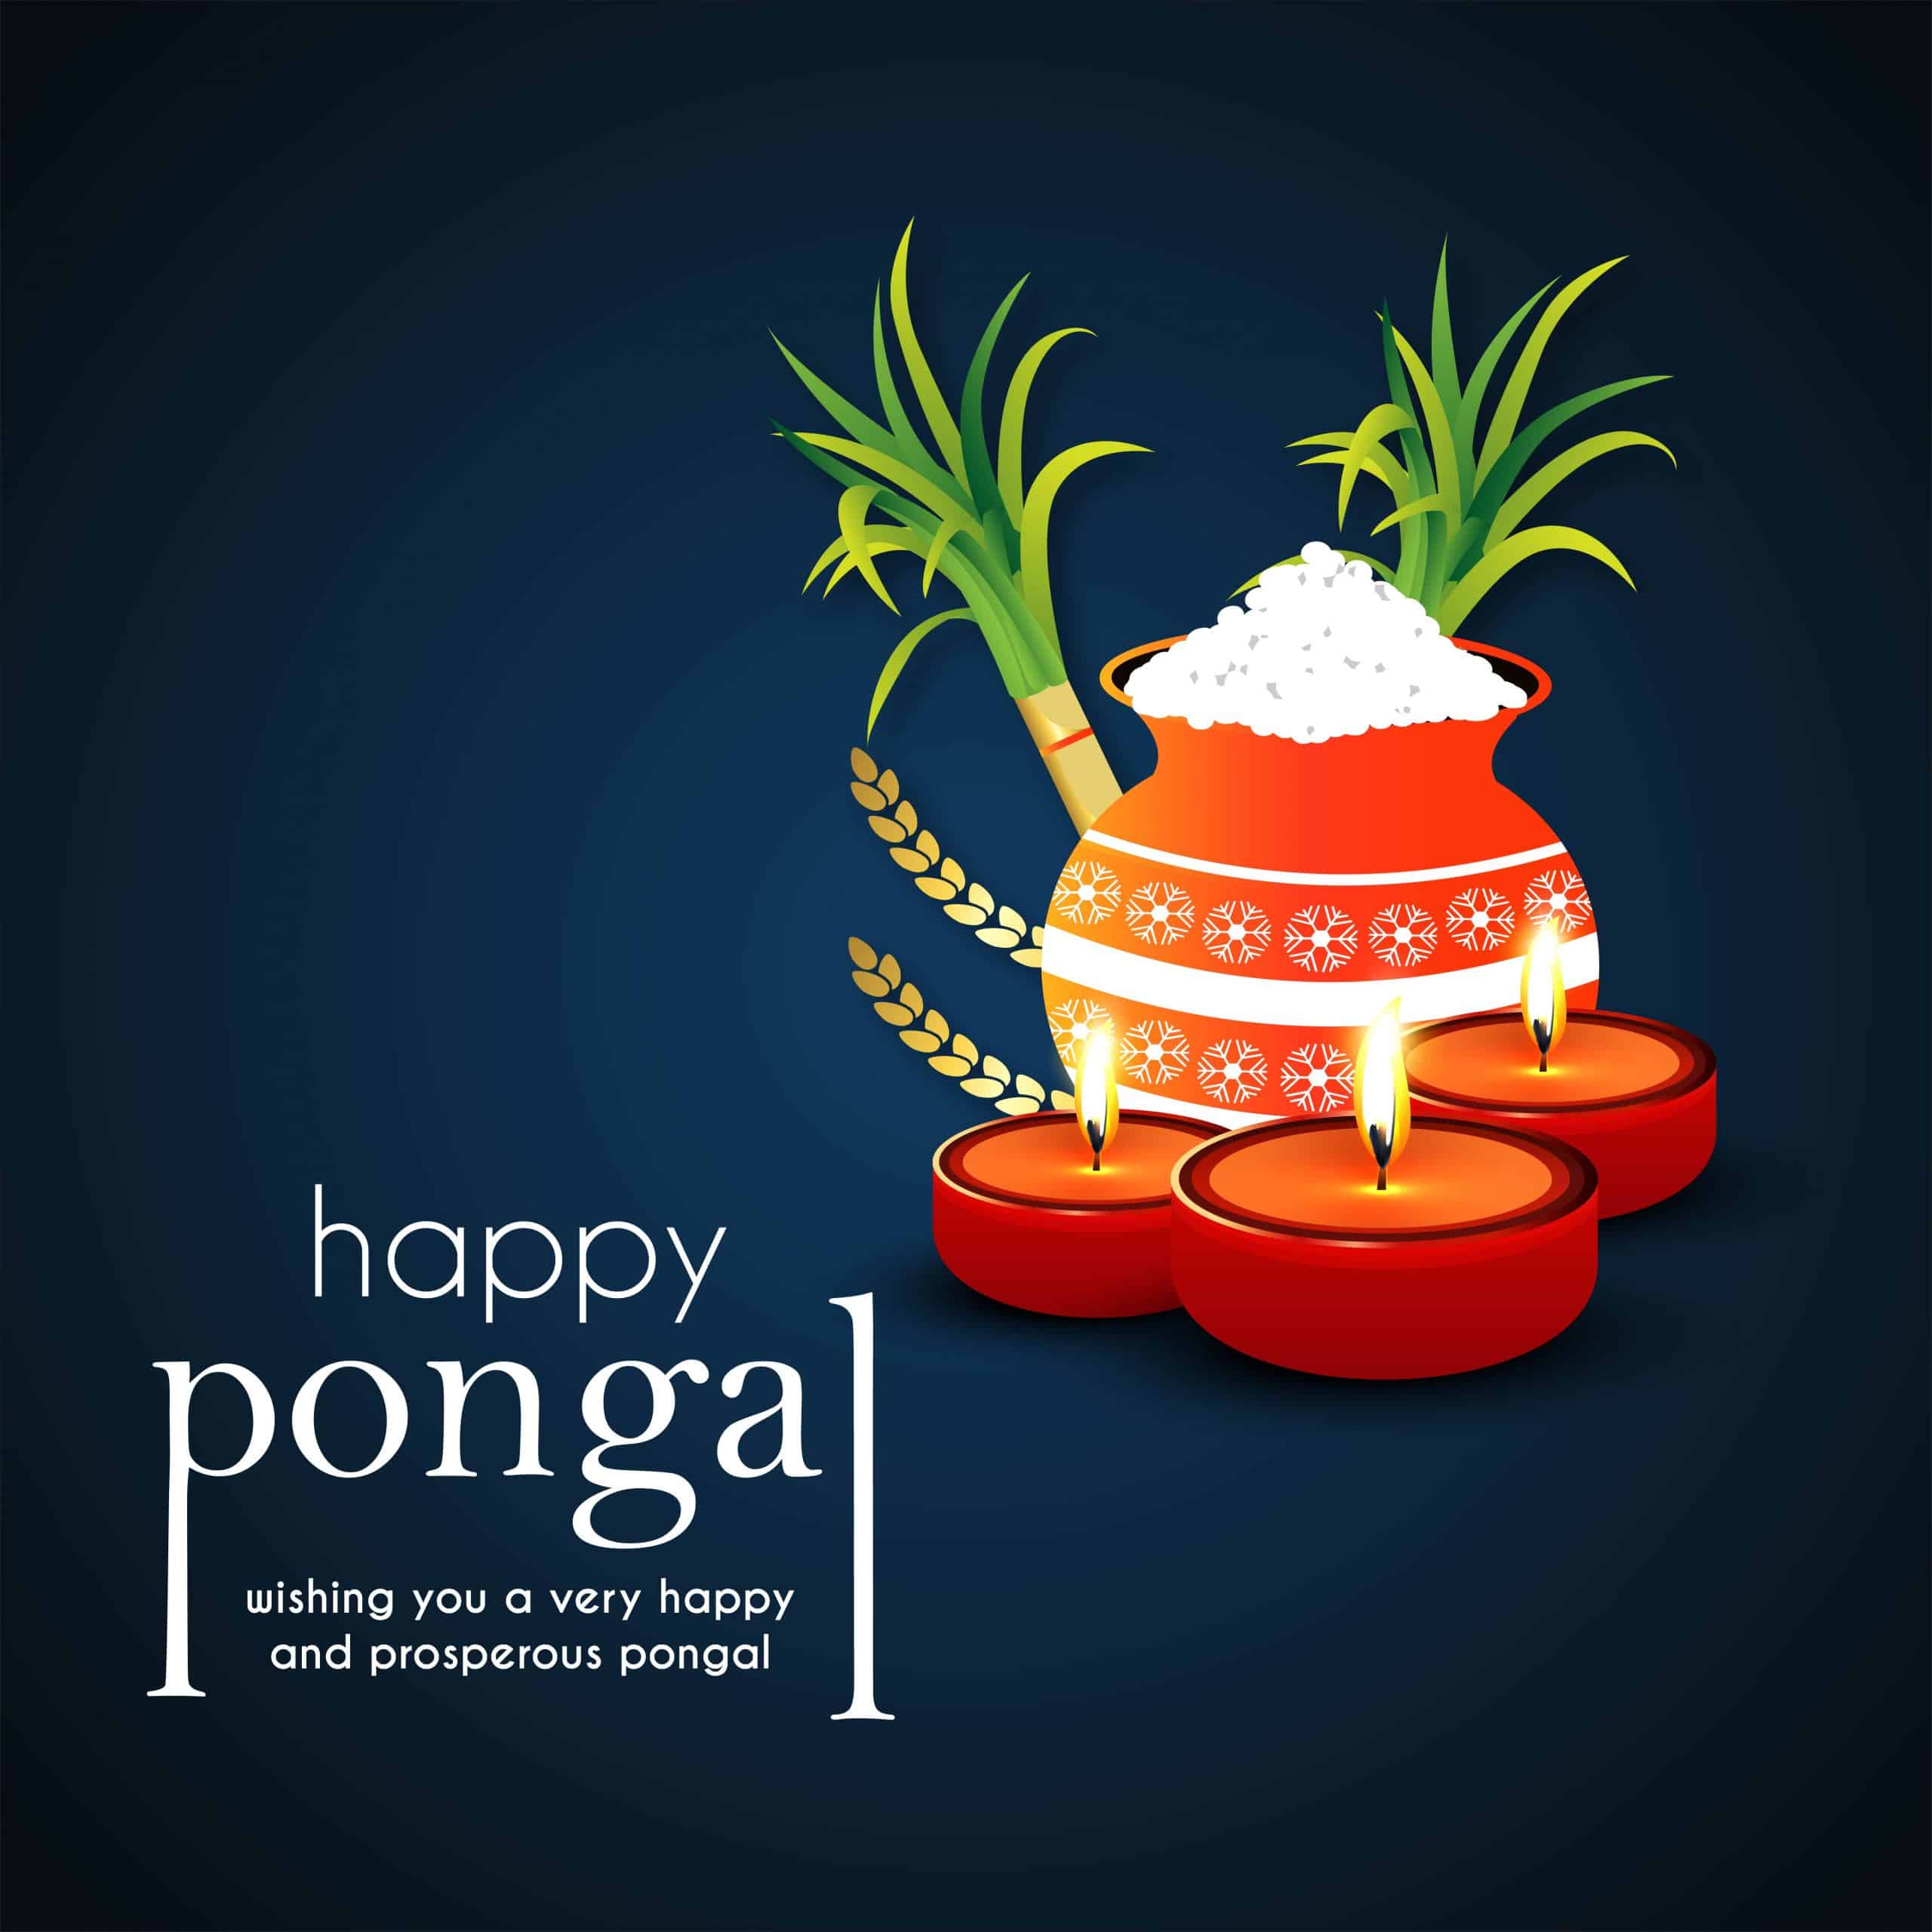 70+] Happy Pongal Images, Photos, Pics & Wallpaper (HD)